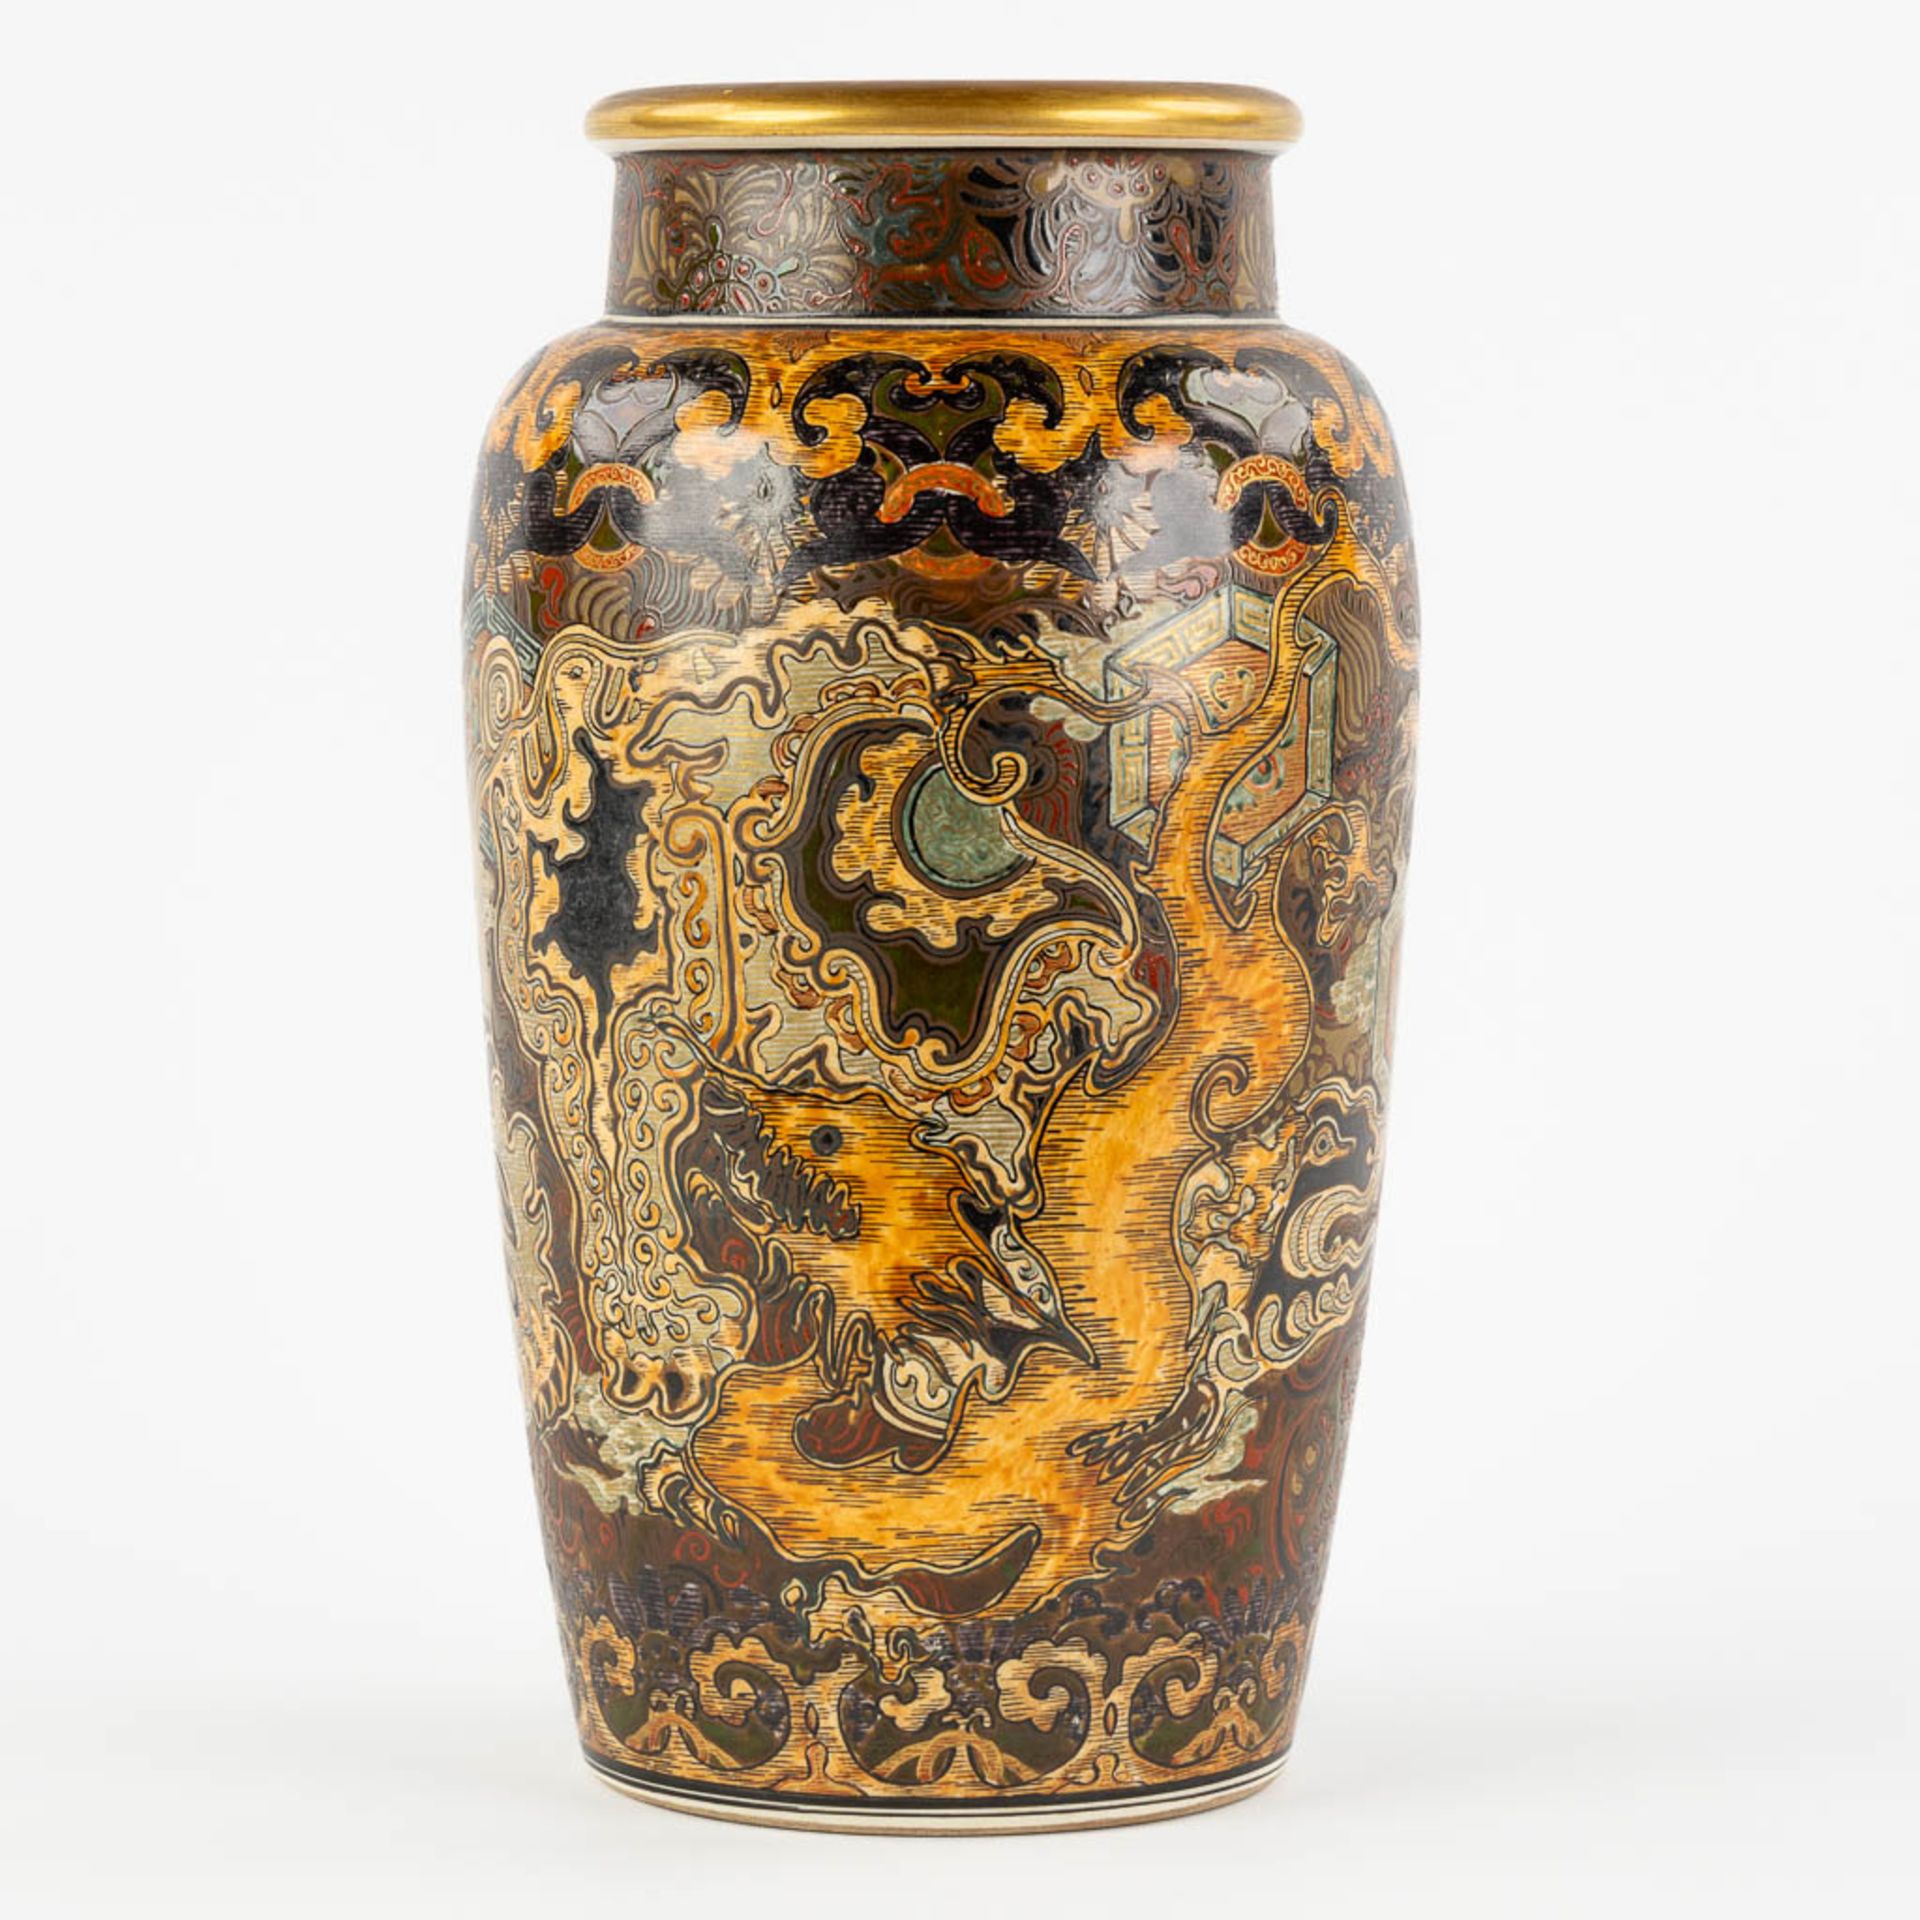 A decorative Japanese vase with a dragon decor. Glazed faience. (H:31 x D:18 cm)